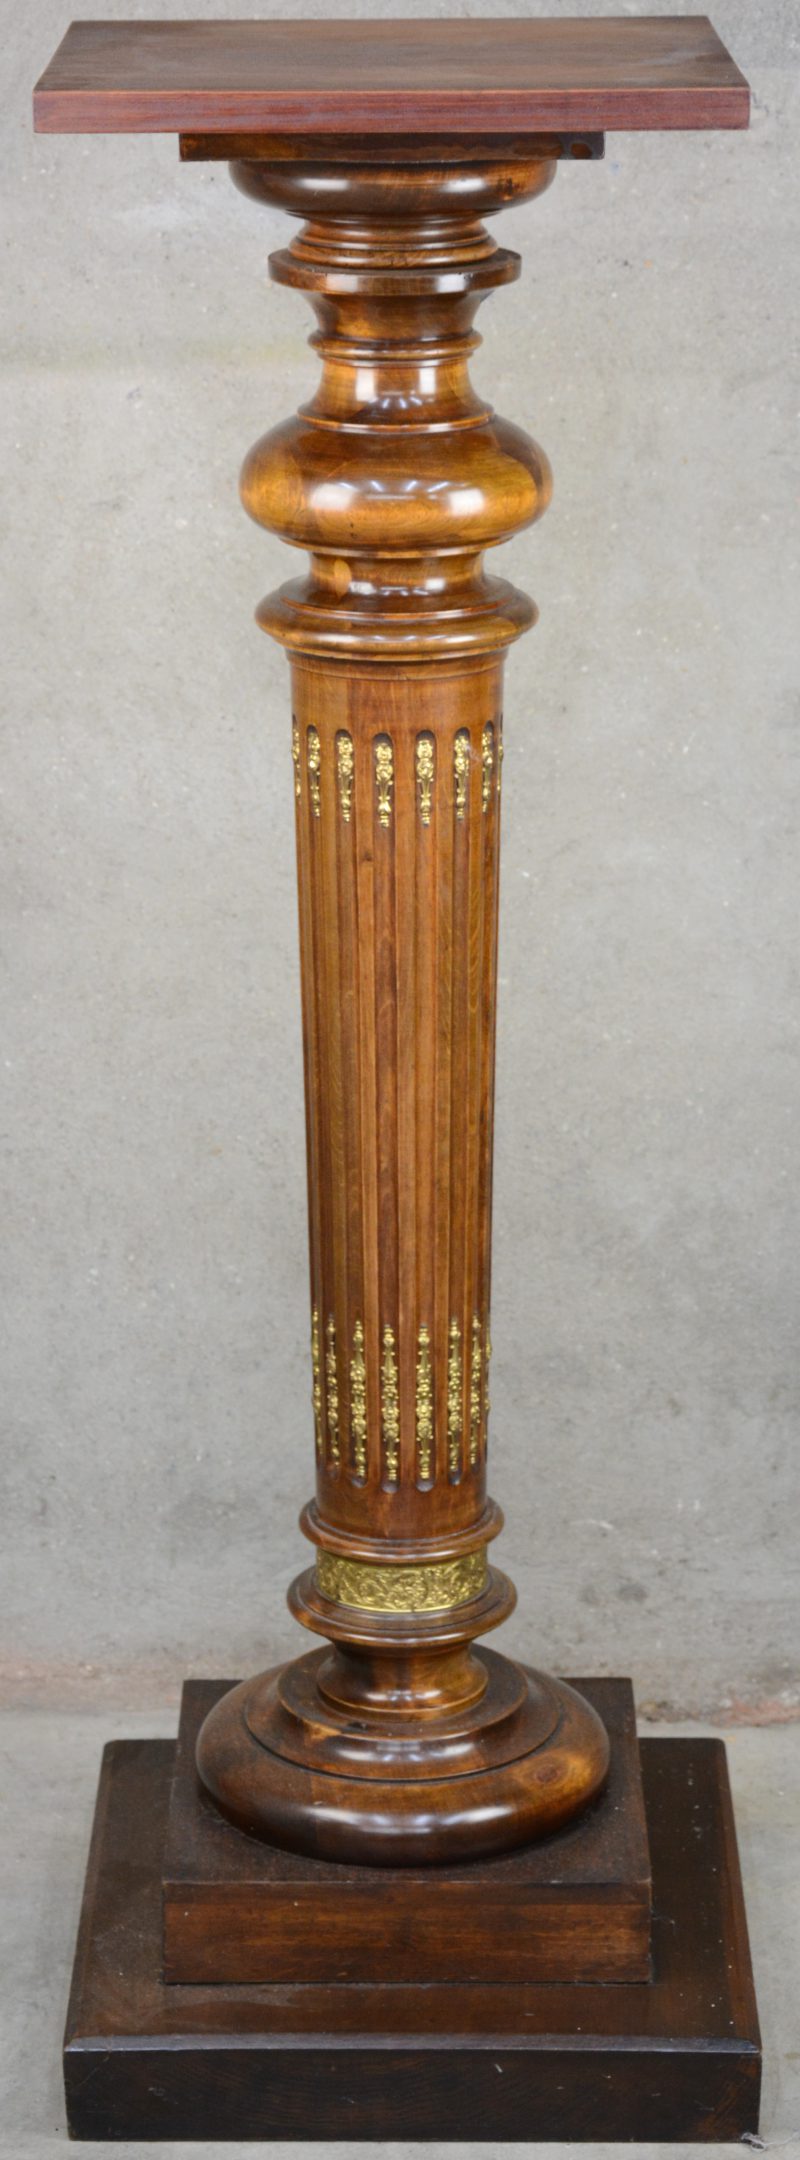 Een zuilvormige piedestal van gebeeldhouwd en gedraaid hout, versierd met messingen monturen.